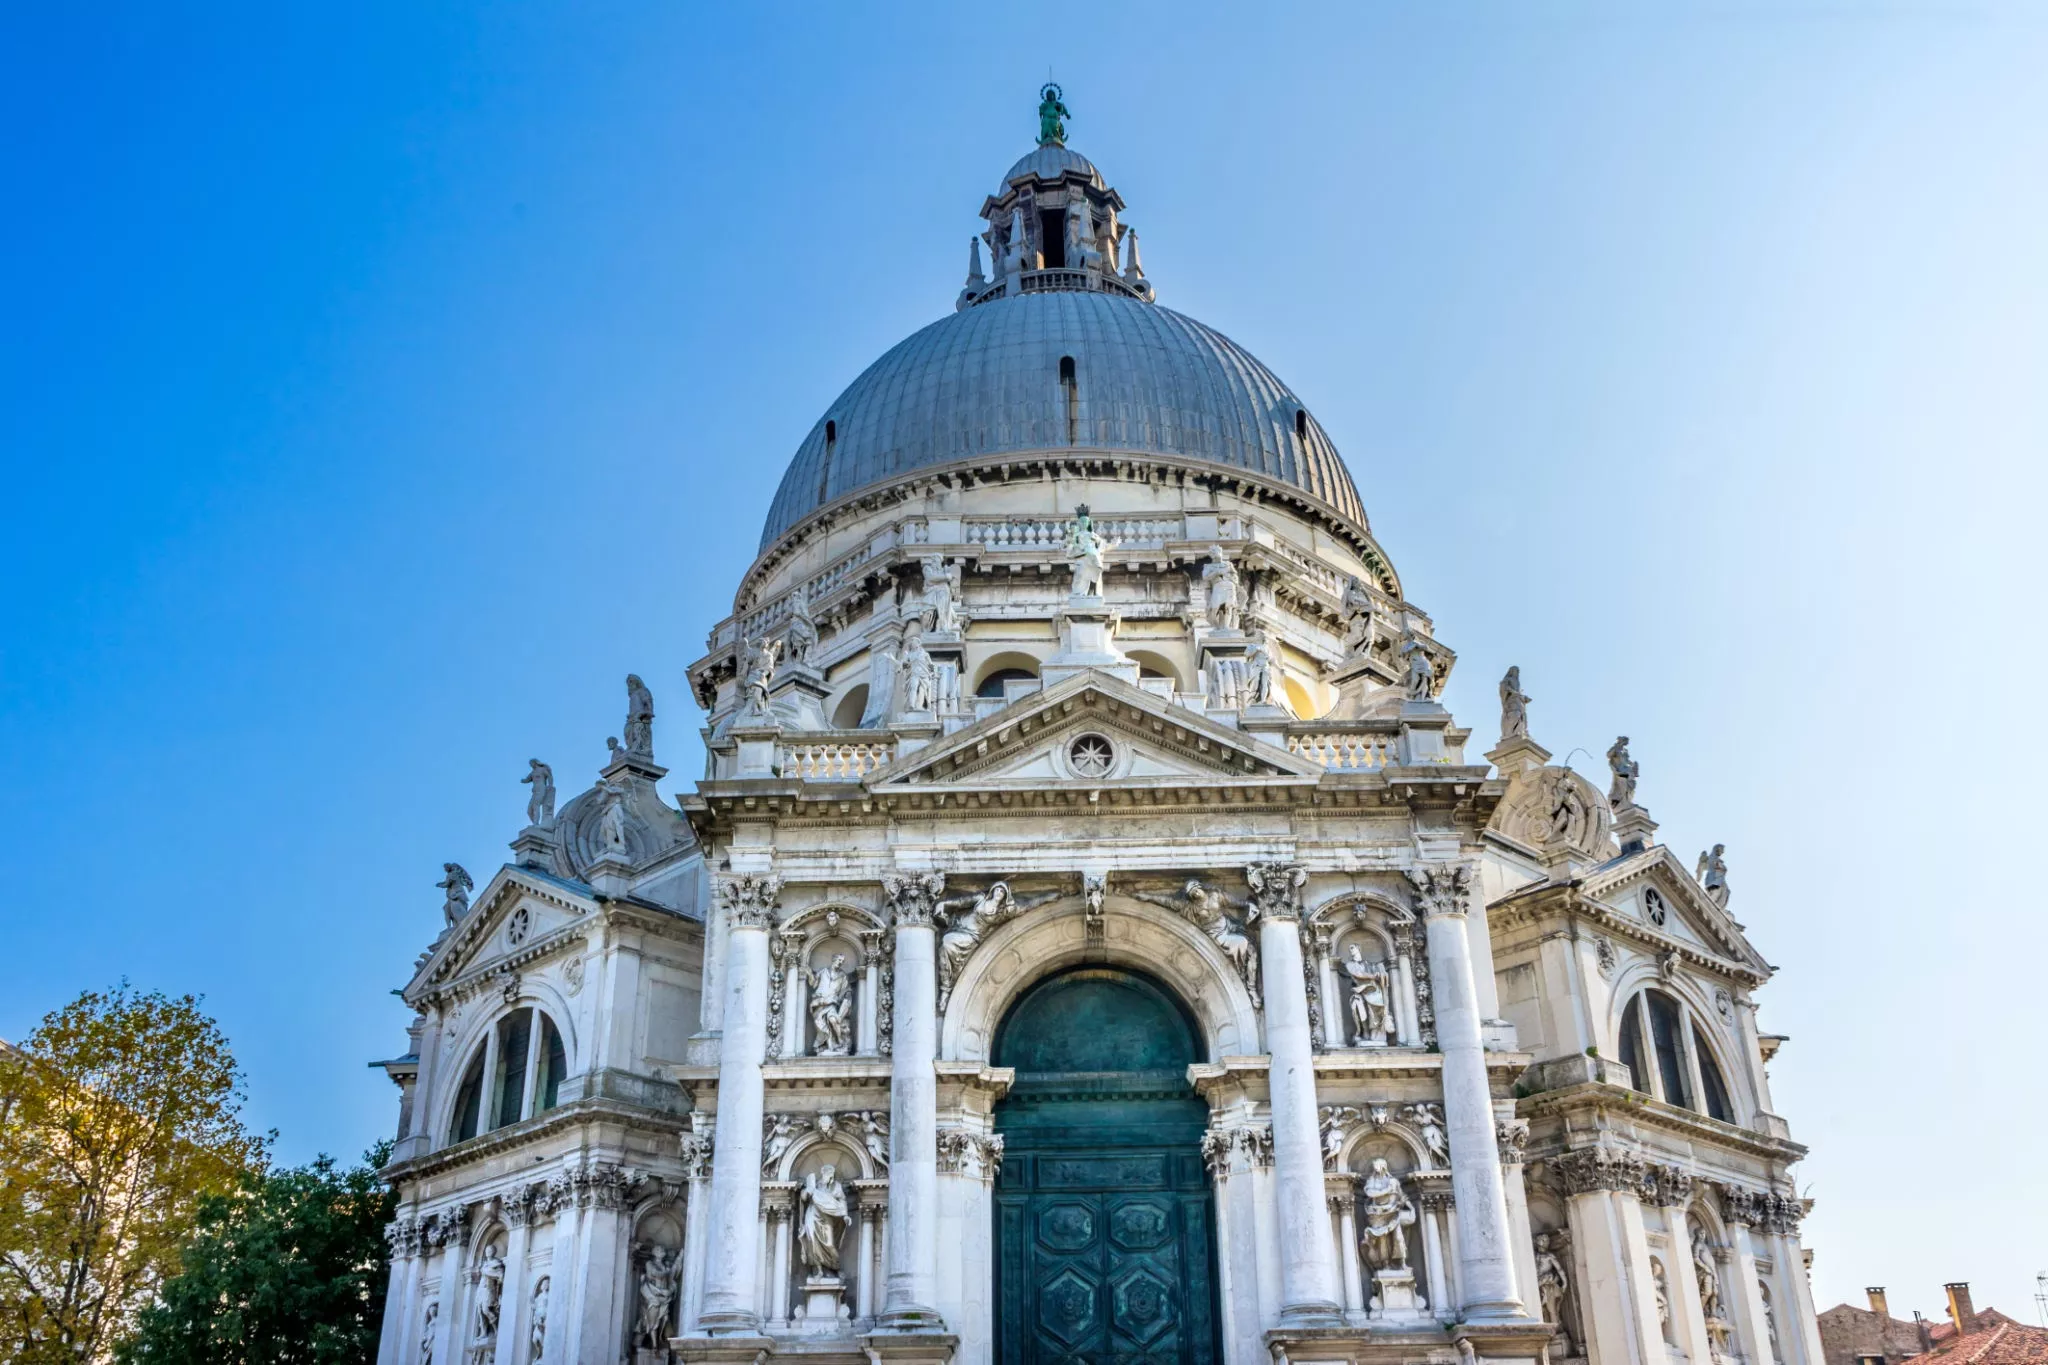 Santa Maria Della Salute in Italy, Europe | Architecture - Rated 4